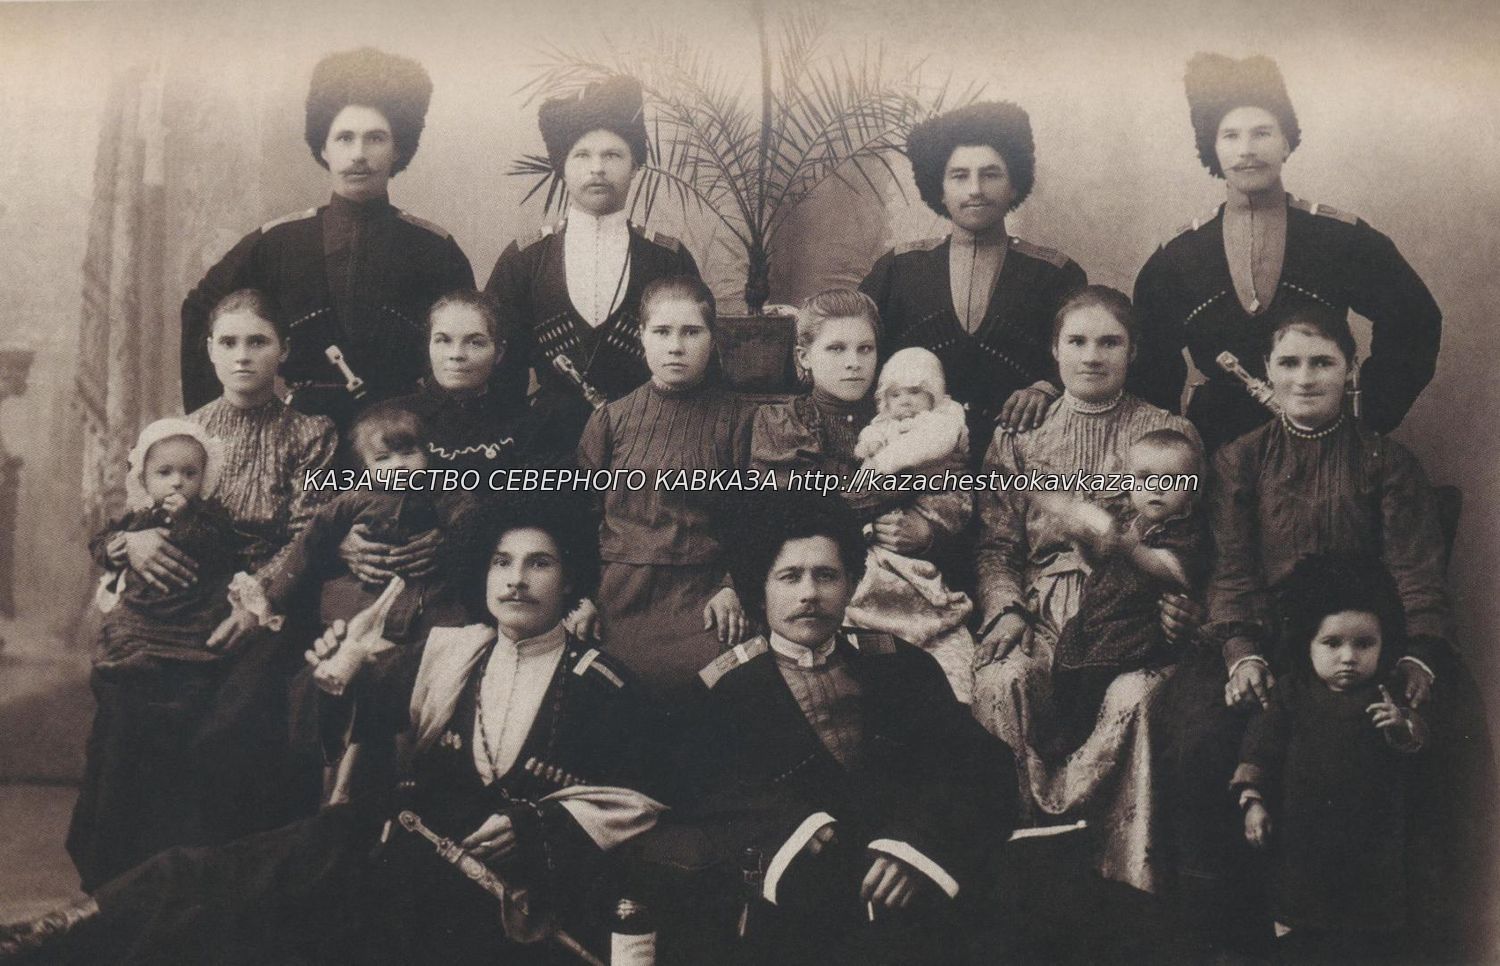 Семейная обрядность терских казаков станиц, расположенных на территории Кабардино-Балкарской республики